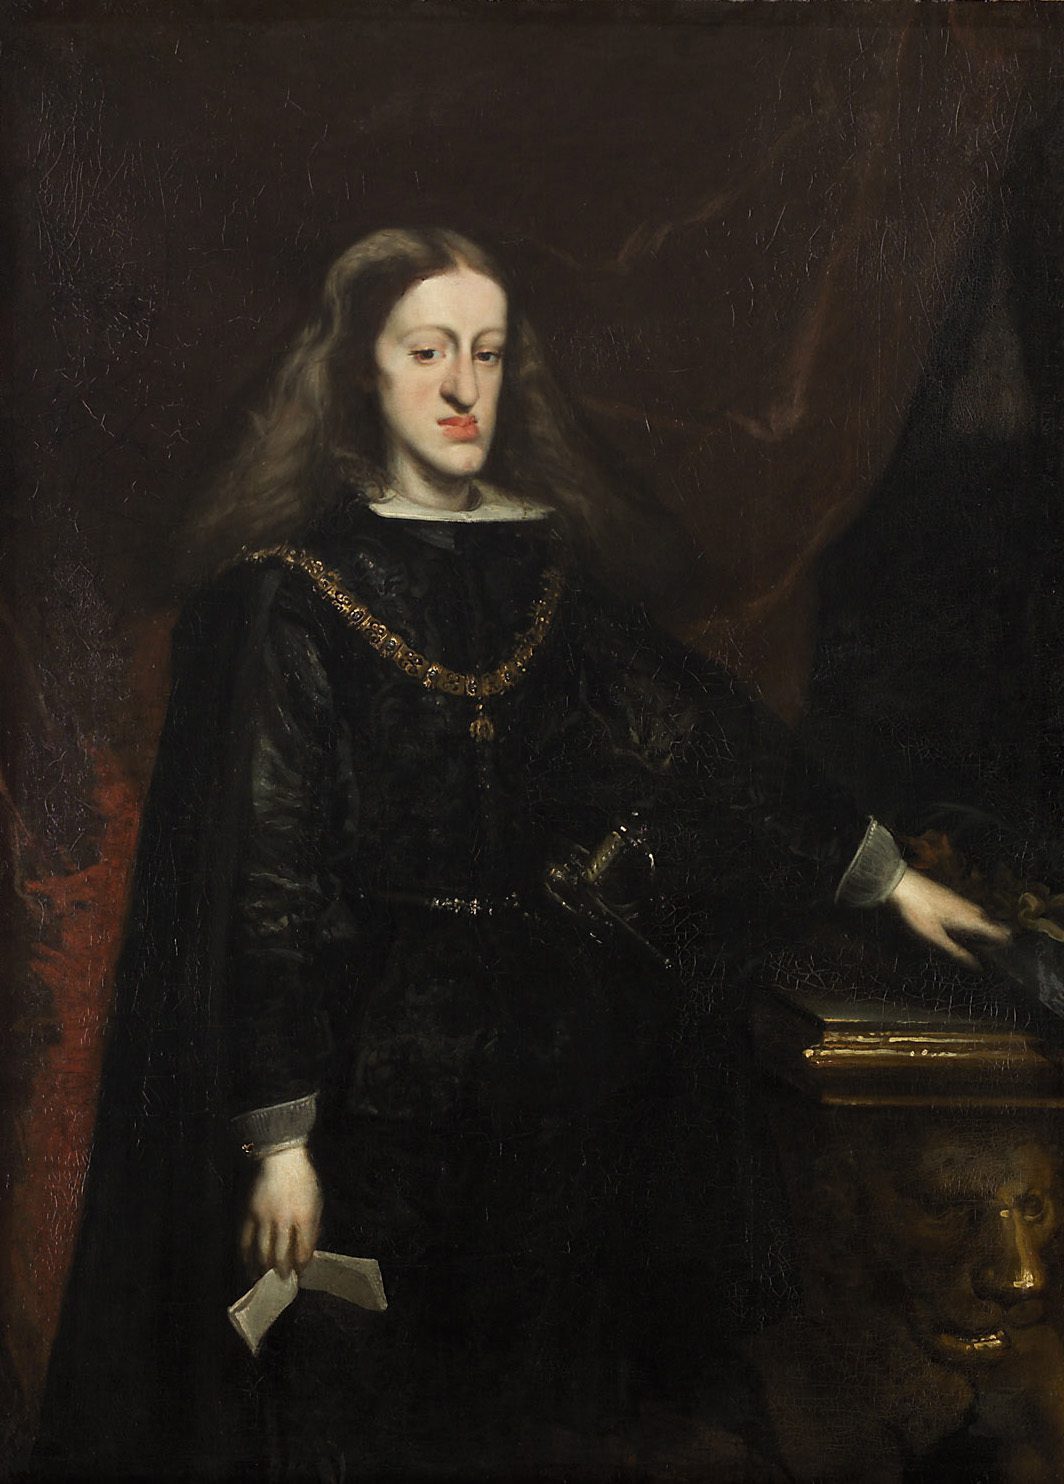 Juan Carreño de Miranda, "Charles II of Spain at 25" (c. 1685). One of Miranda's last paintings.